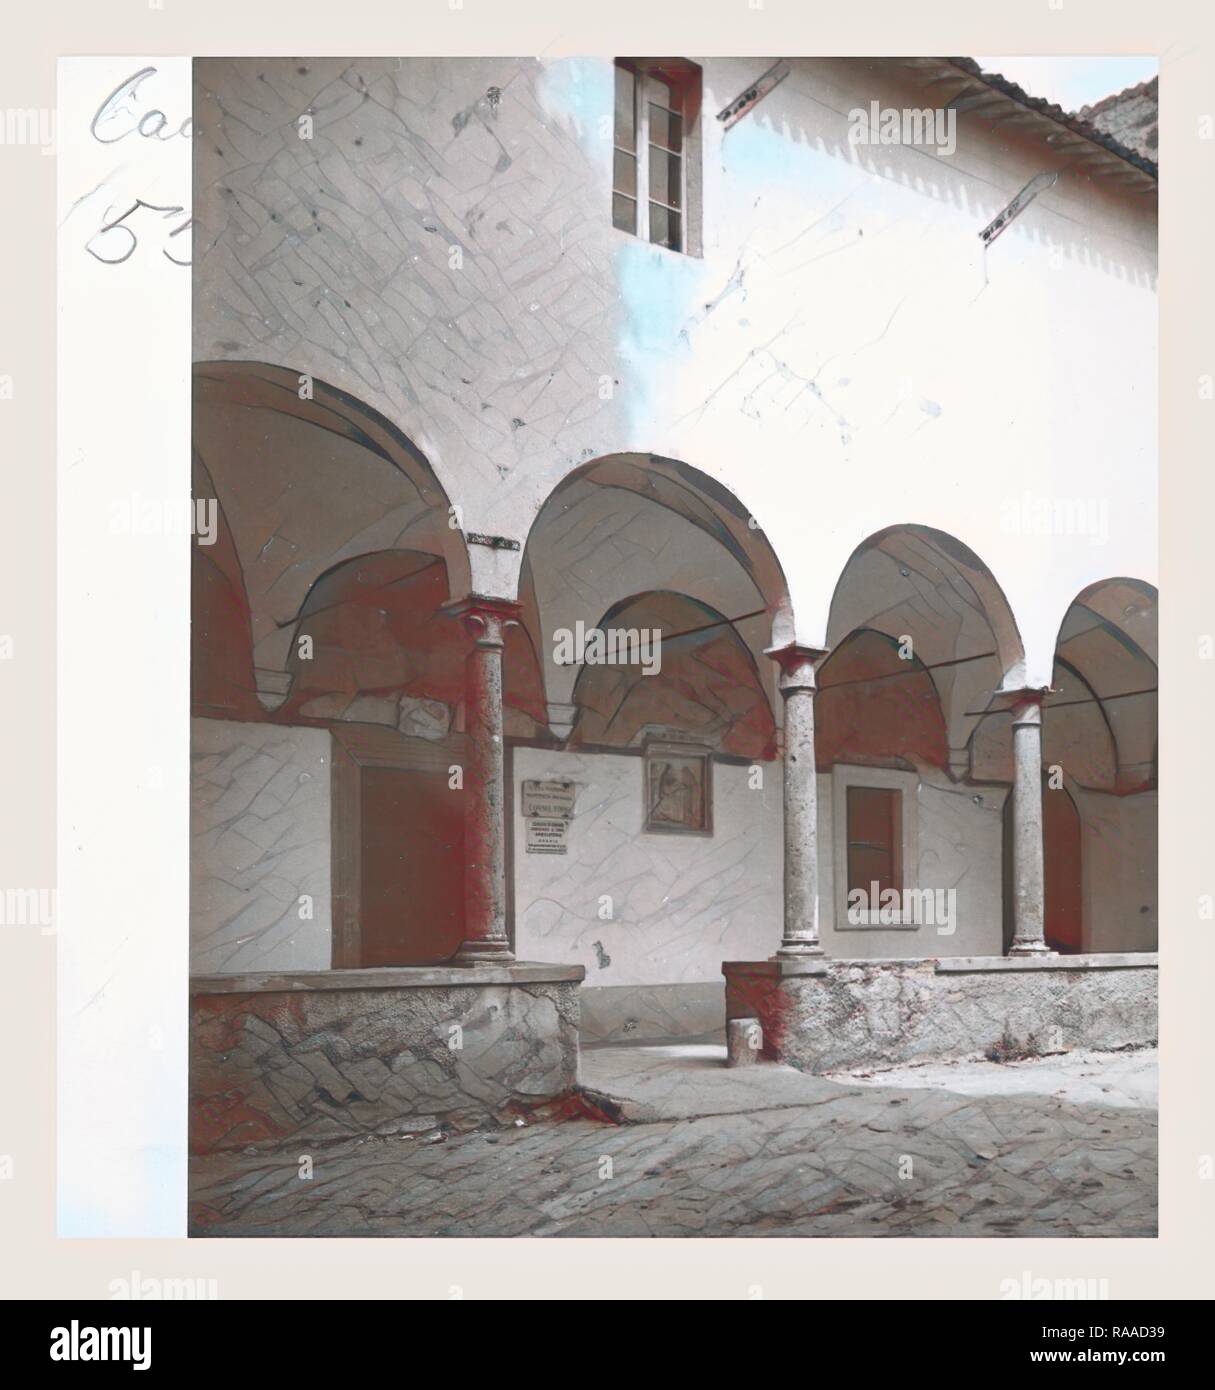 Lazio Viterbo, Canino, S. Francesco. Reinventato da Gibon. Arte Classica con un tocco di moderno reinventato Foto Stock